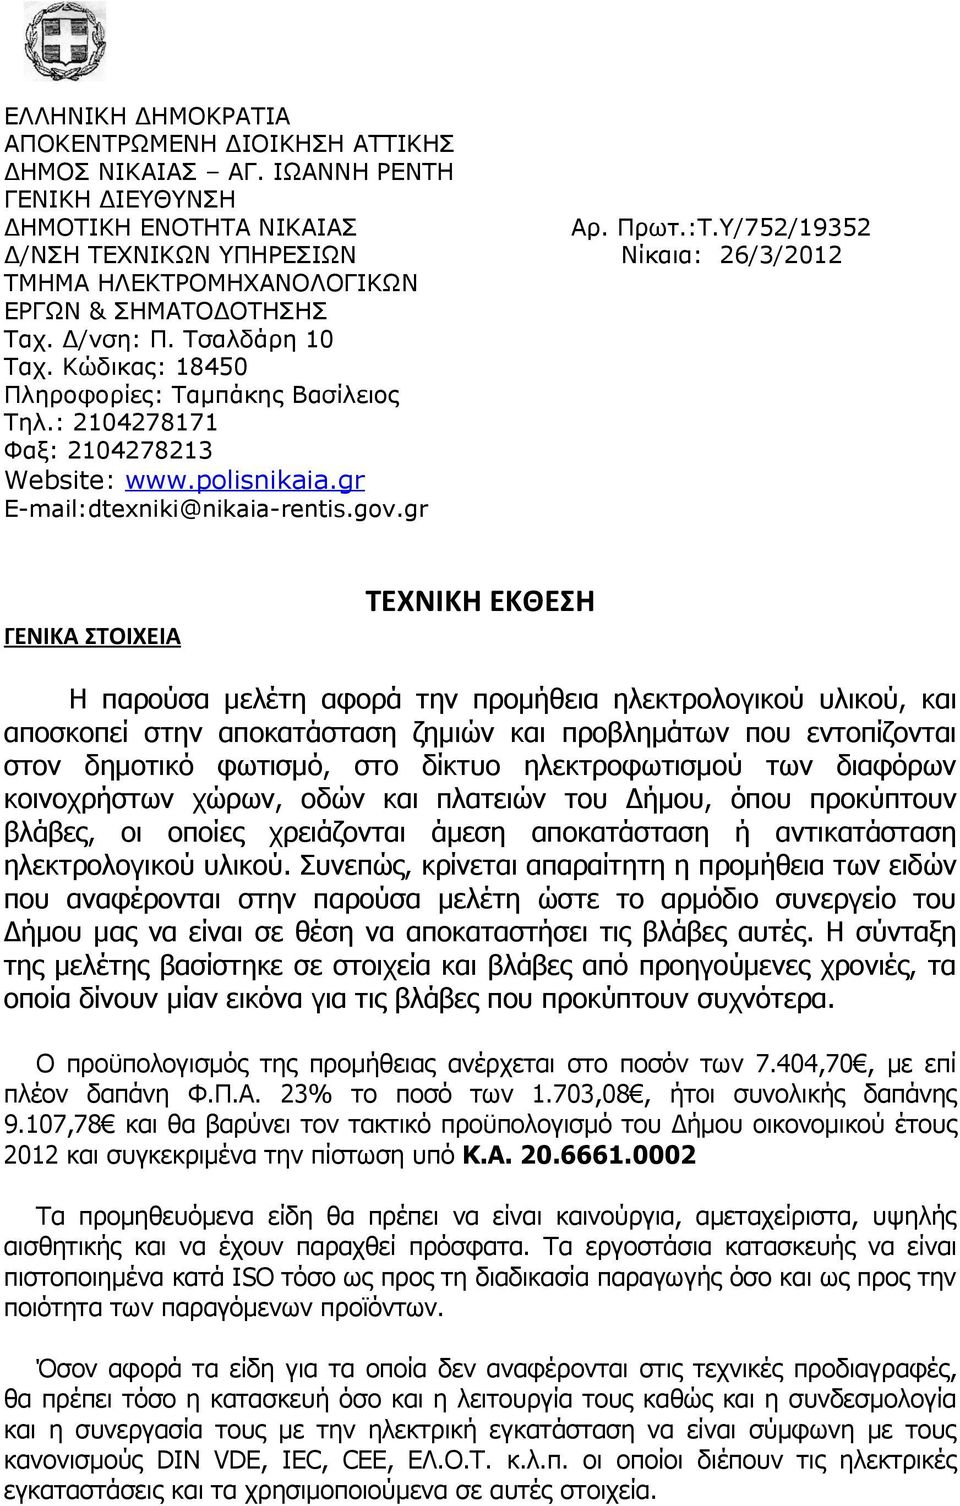 Κώδικας: 18450 Πληροφορίες: Ταμπάκης Βασίλειος Τηλ.: 2104278171 Φαξ: 2104278213 Website: www.polisnikaia.gr E-mail:dtexniki@nikaia-rentis.gov.gr Αρ. Πρωτ.:Τ.